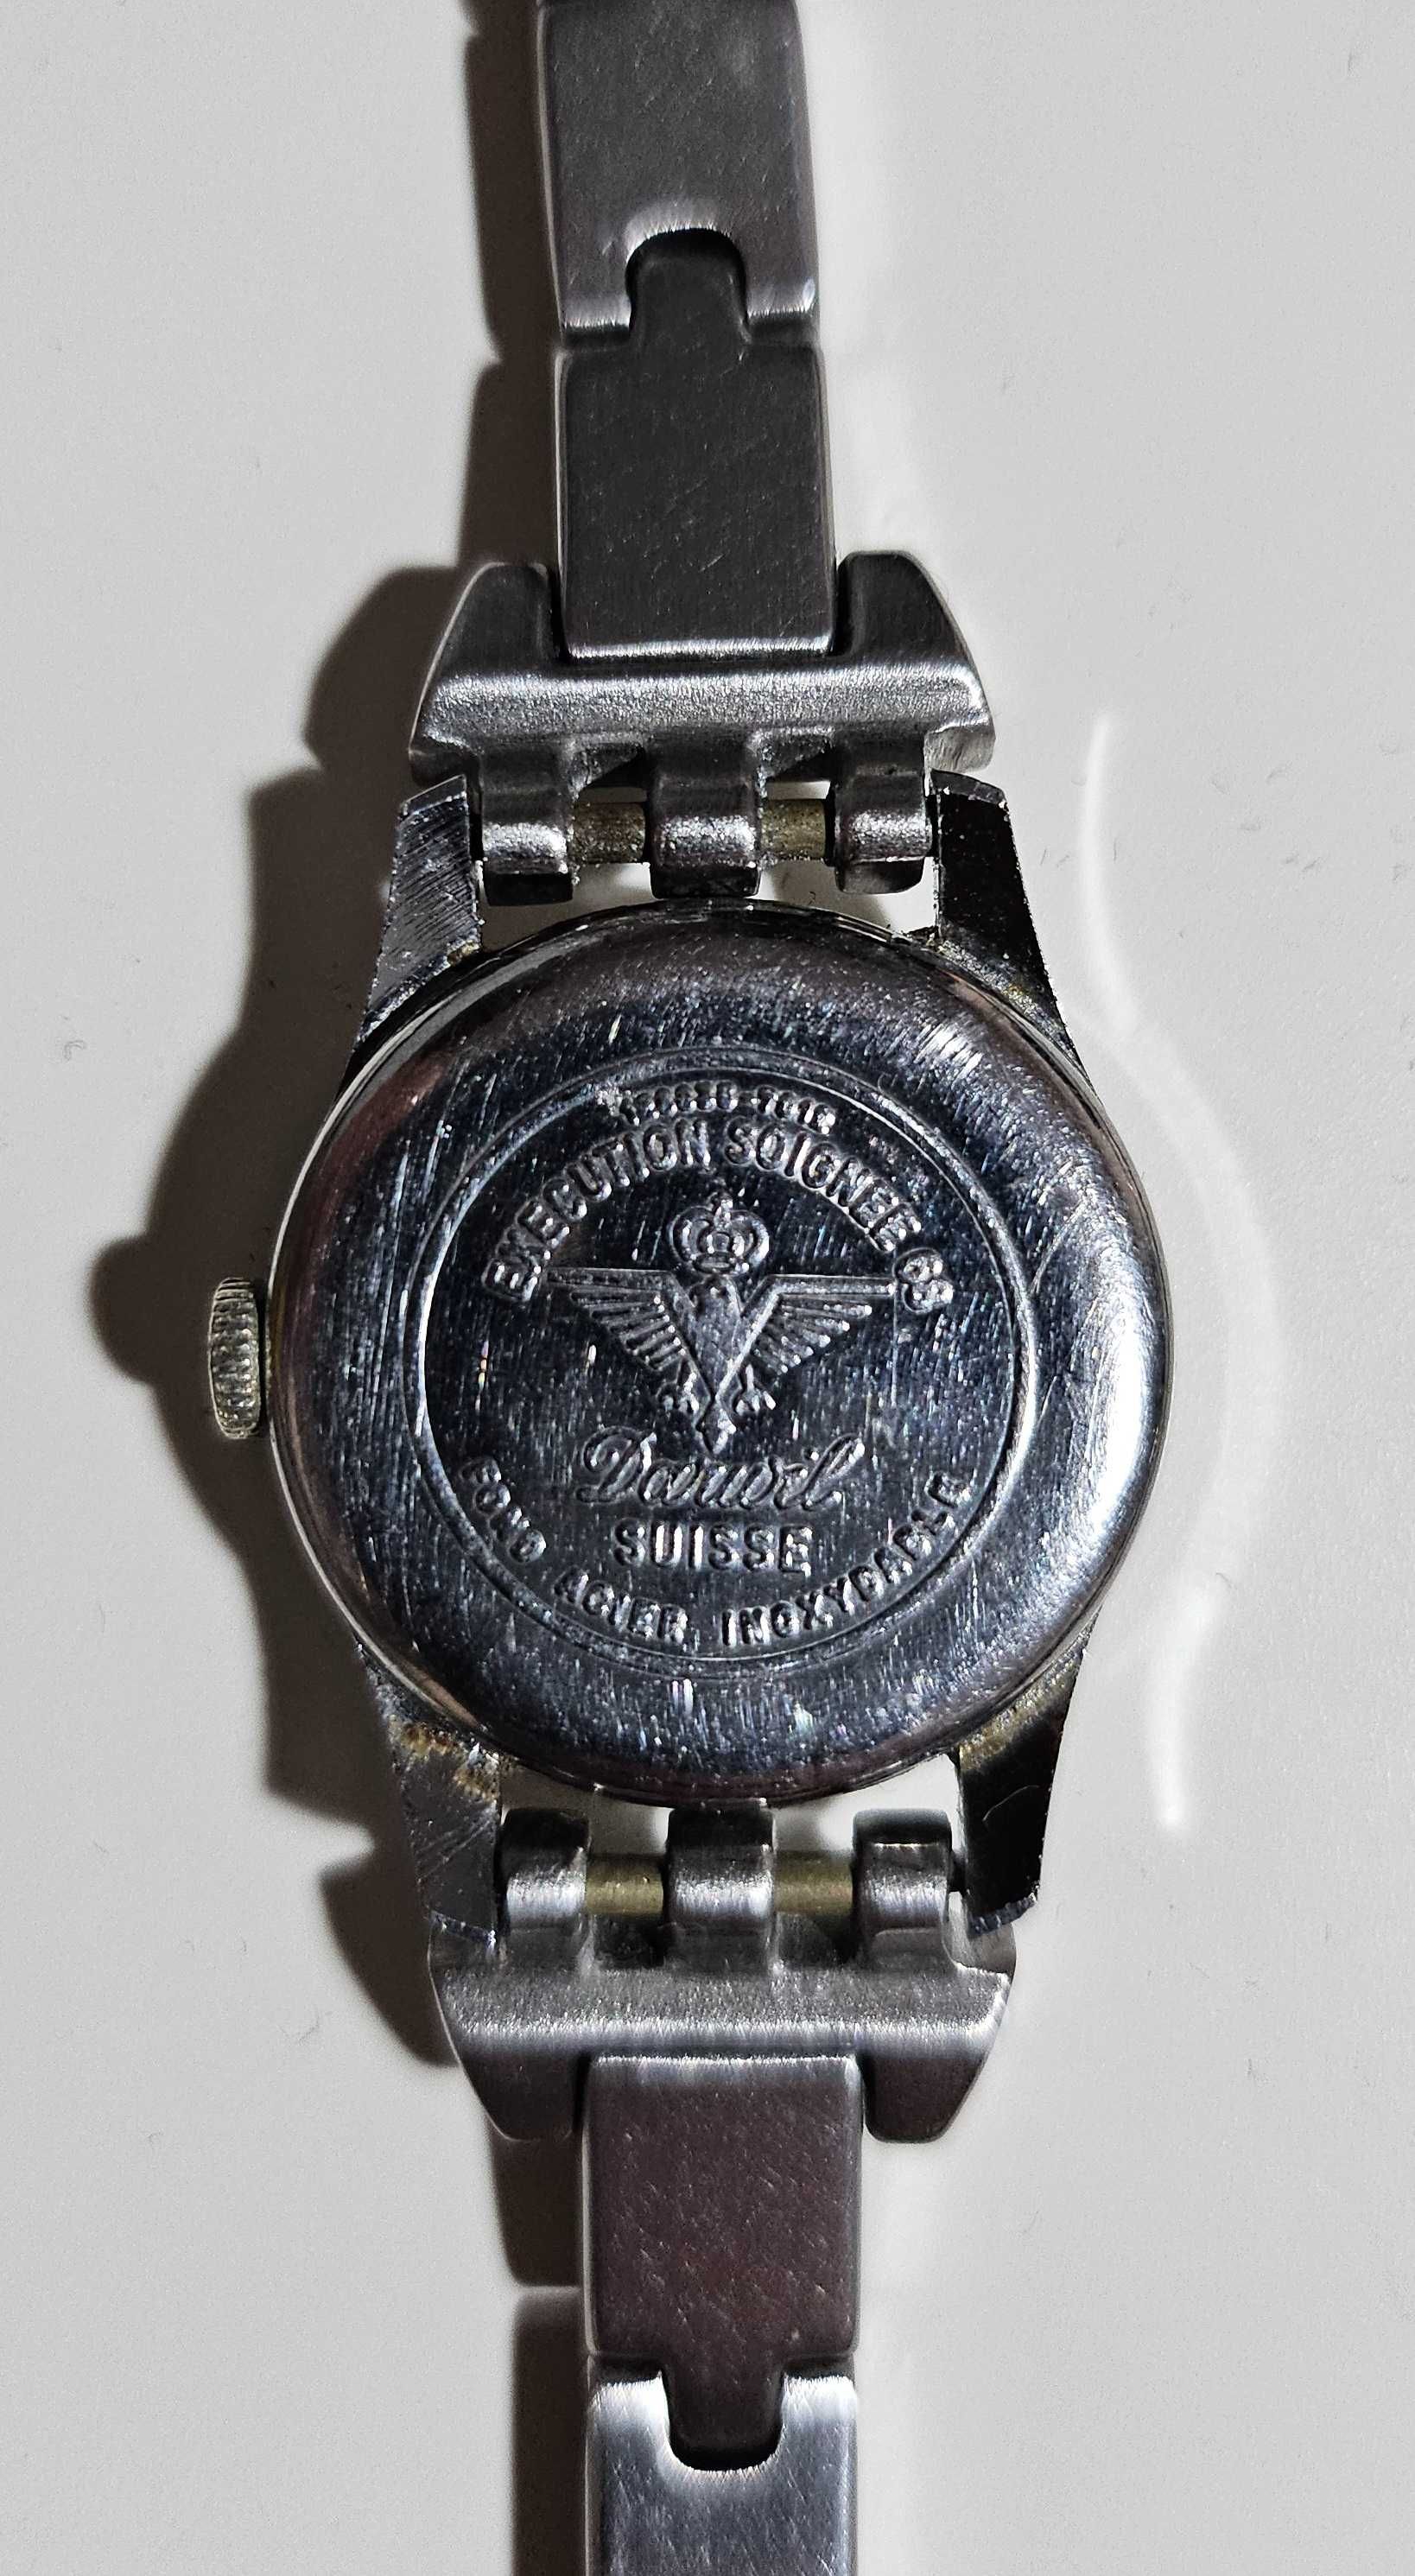 ceas de damă vintage mecanic Darwil Lady68